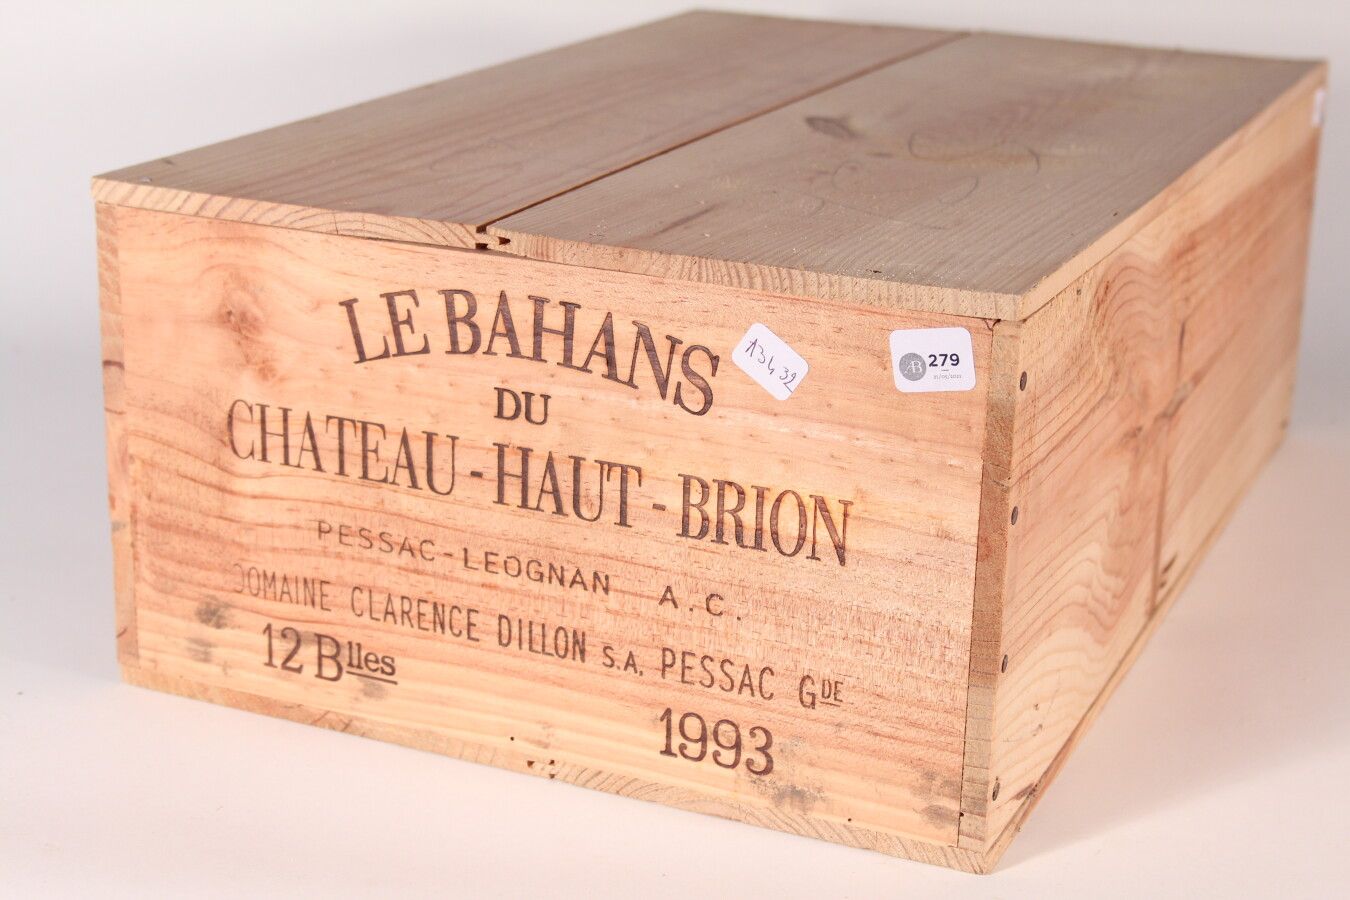 Null 1993 - Bahans Haut Brion

Pessac-Léognan Rouge - 12 blles